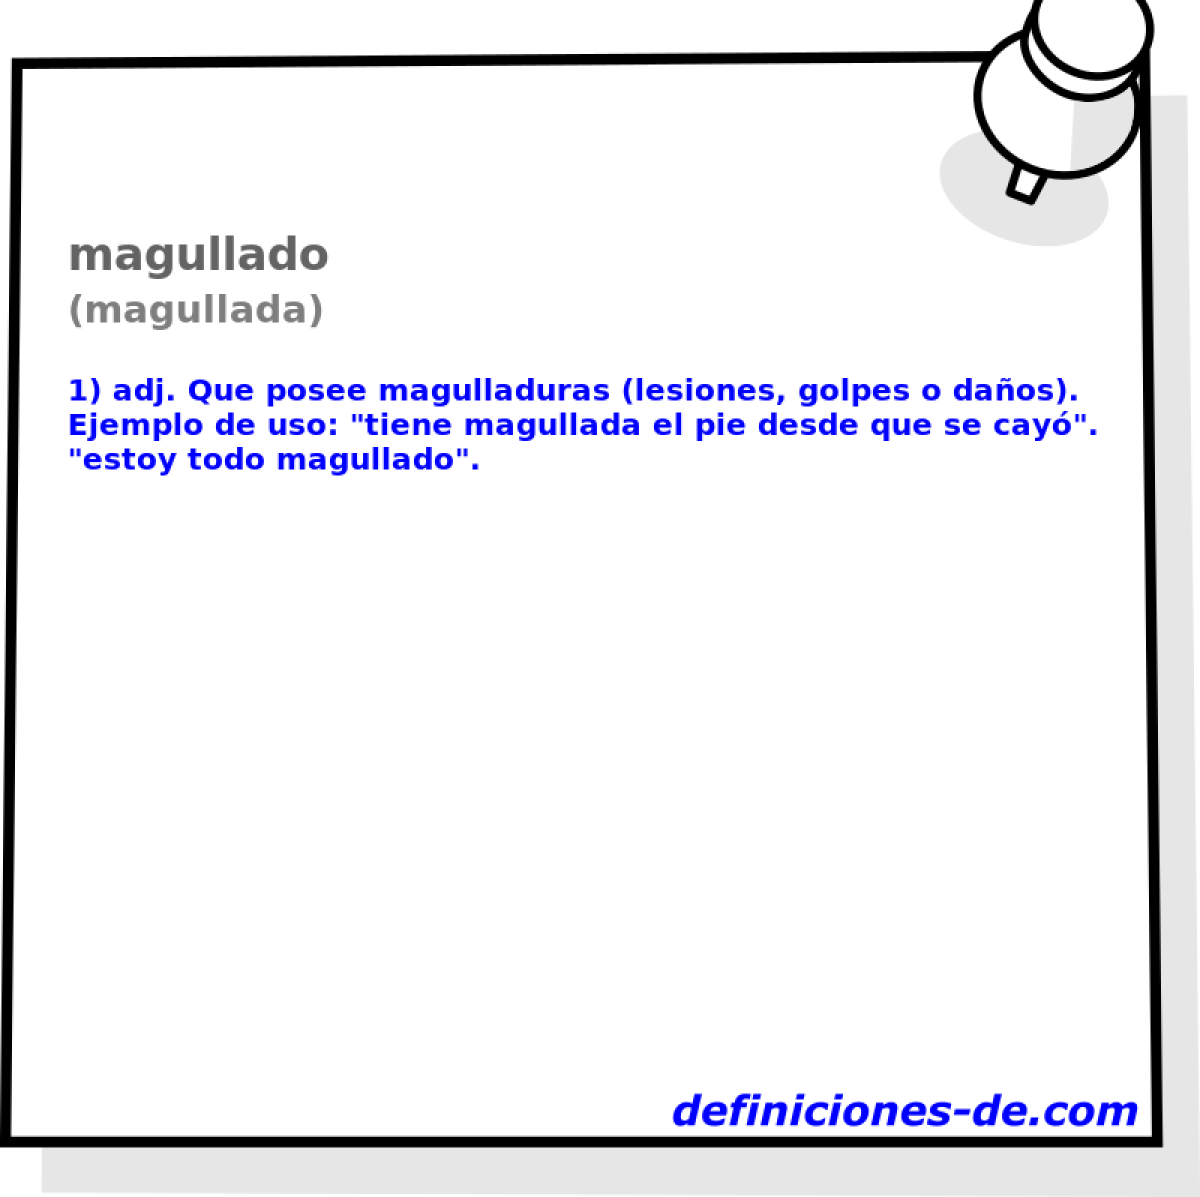 magullado (magullada)